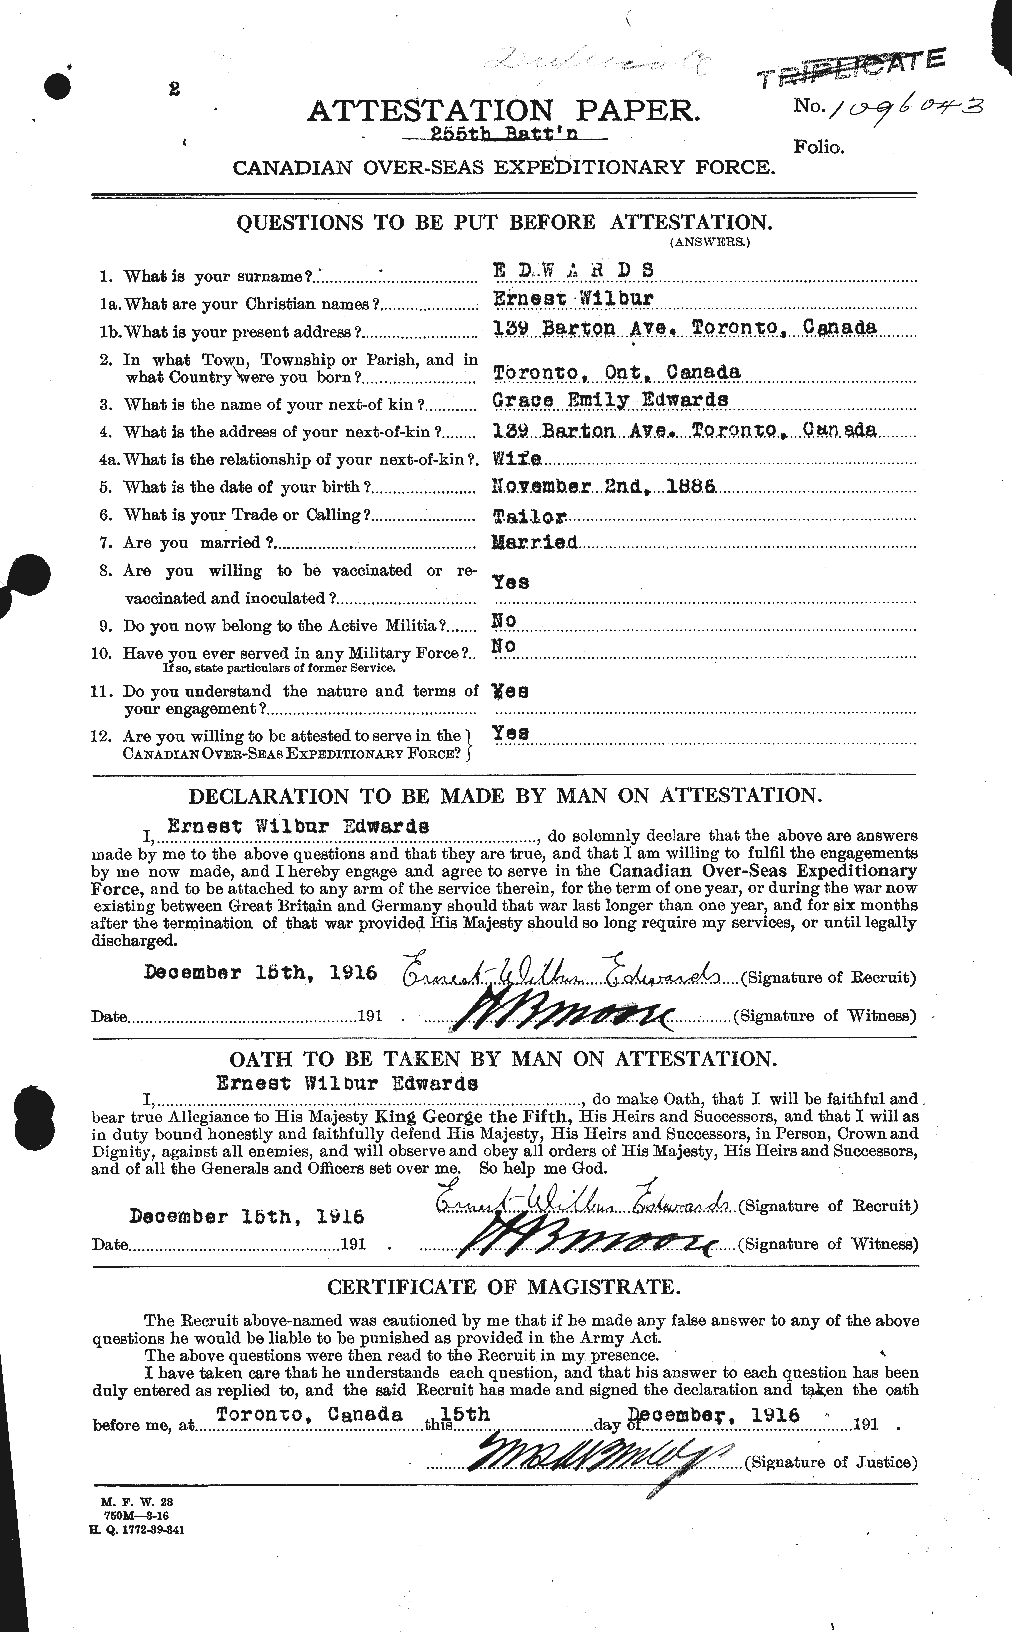 Dossiers du Personnel de la Première Guerre mondiale - CEC 309017a